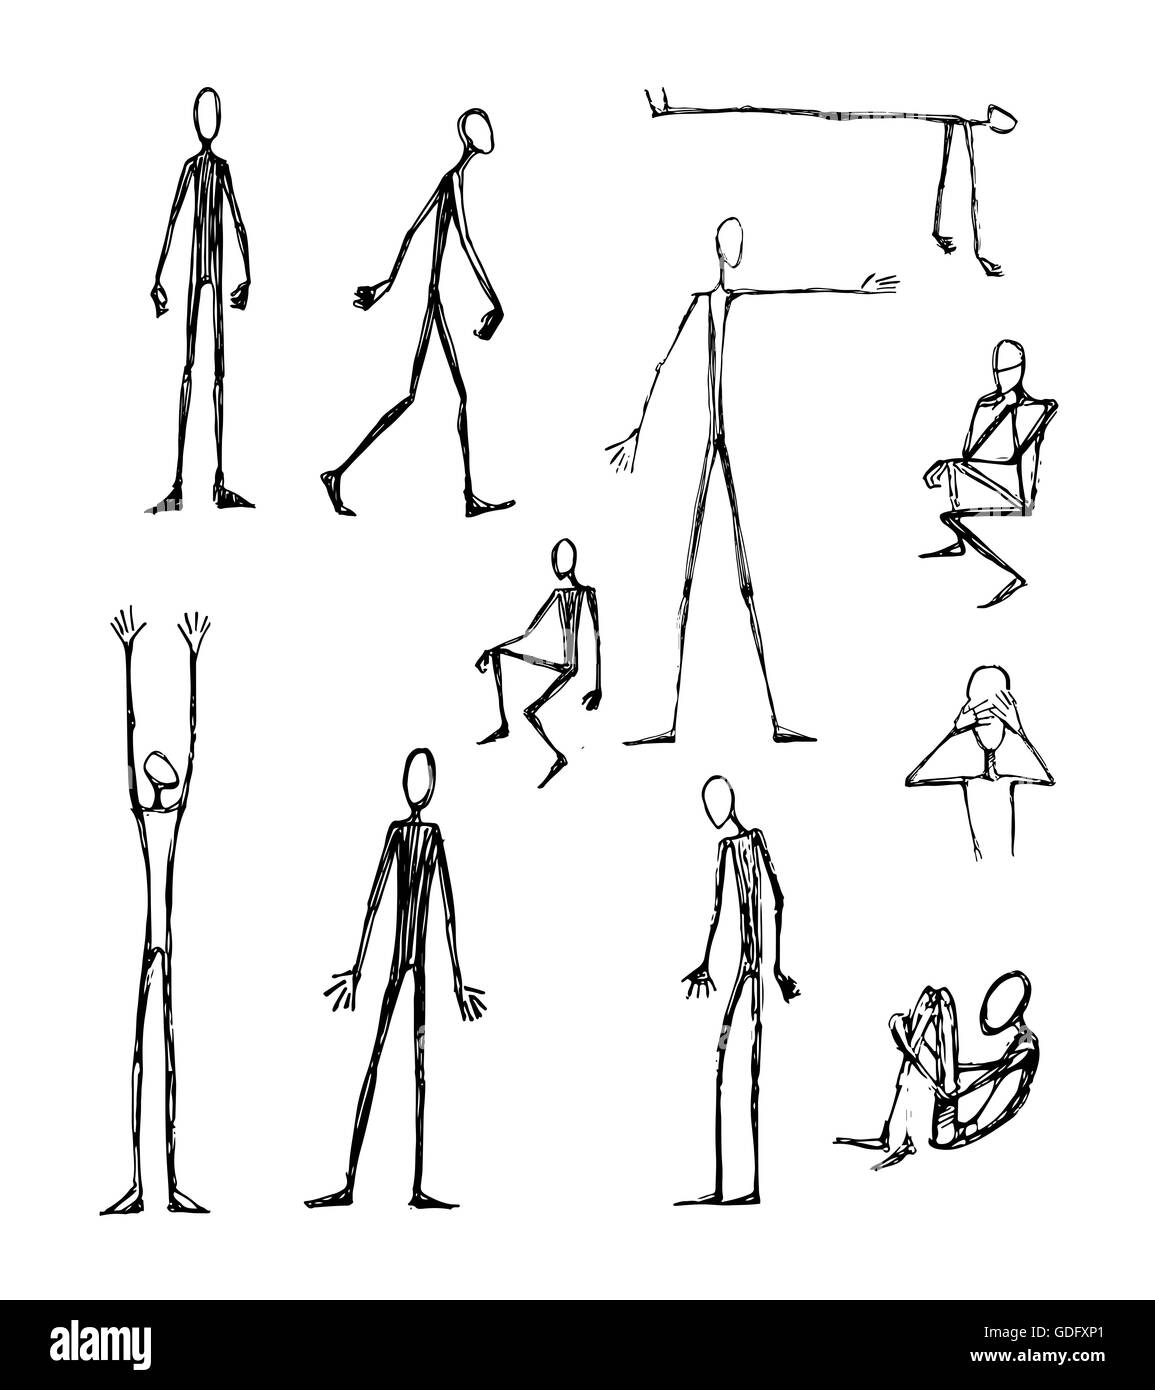 Disegnata a mano illustrazione vettoriale o di disegno di alcuni uomini lungo silhouettes skinny Foto Stock